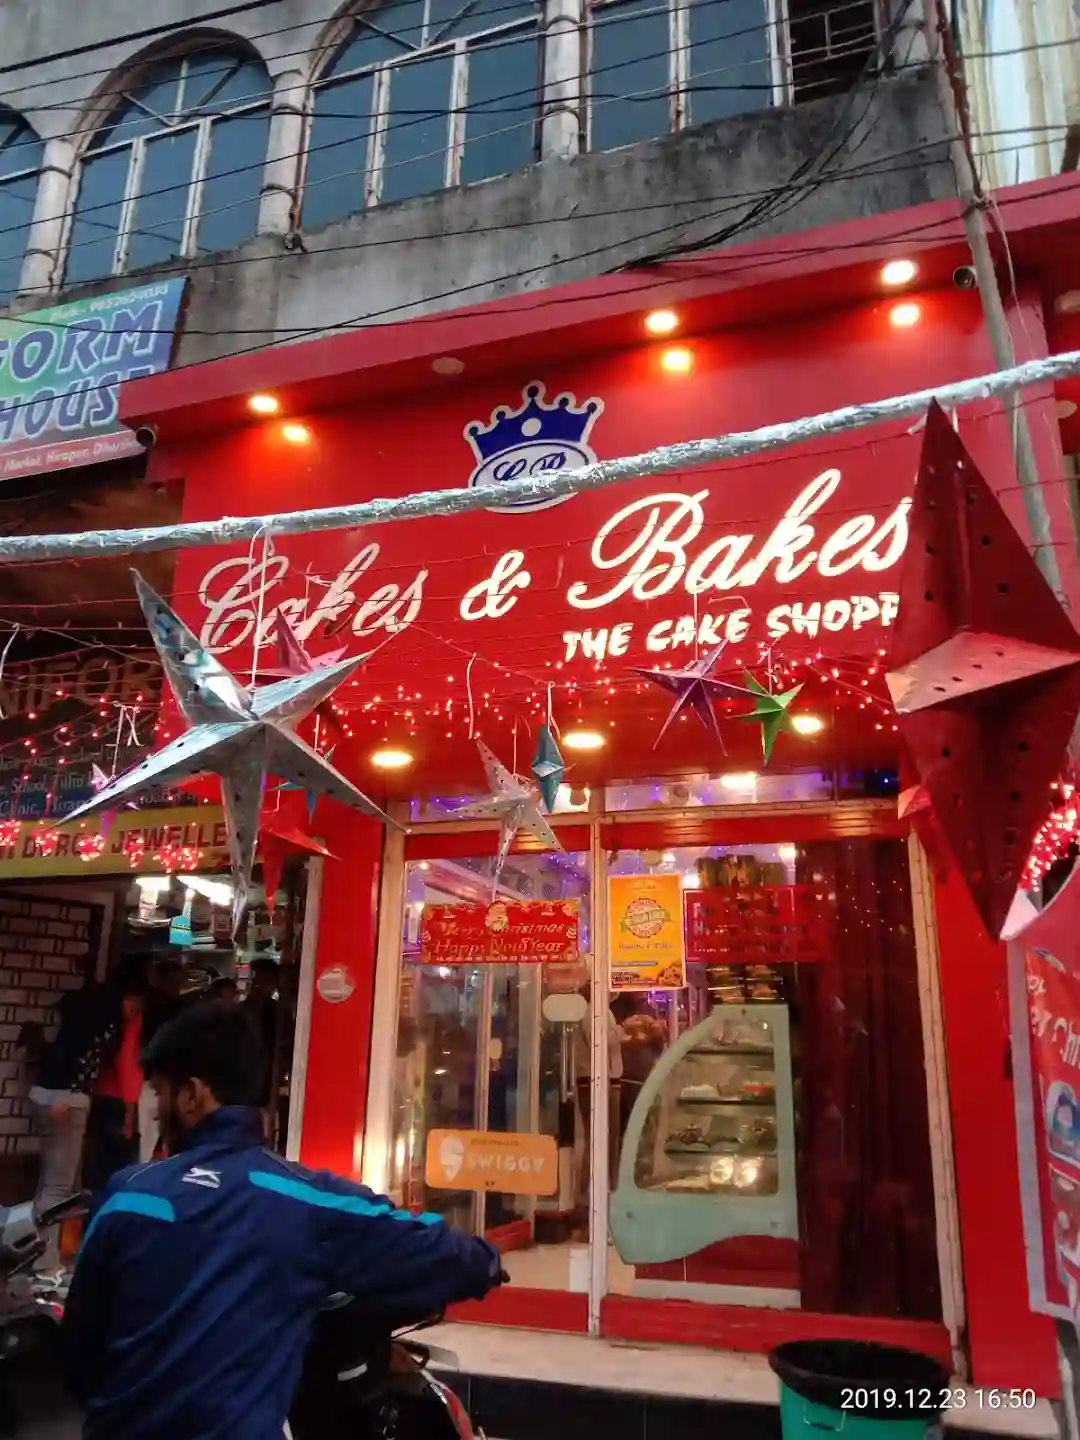 Rohit Cakes & Bakes in Kamla Nagar,Agra - Best Bakeries in Agra - Justdial